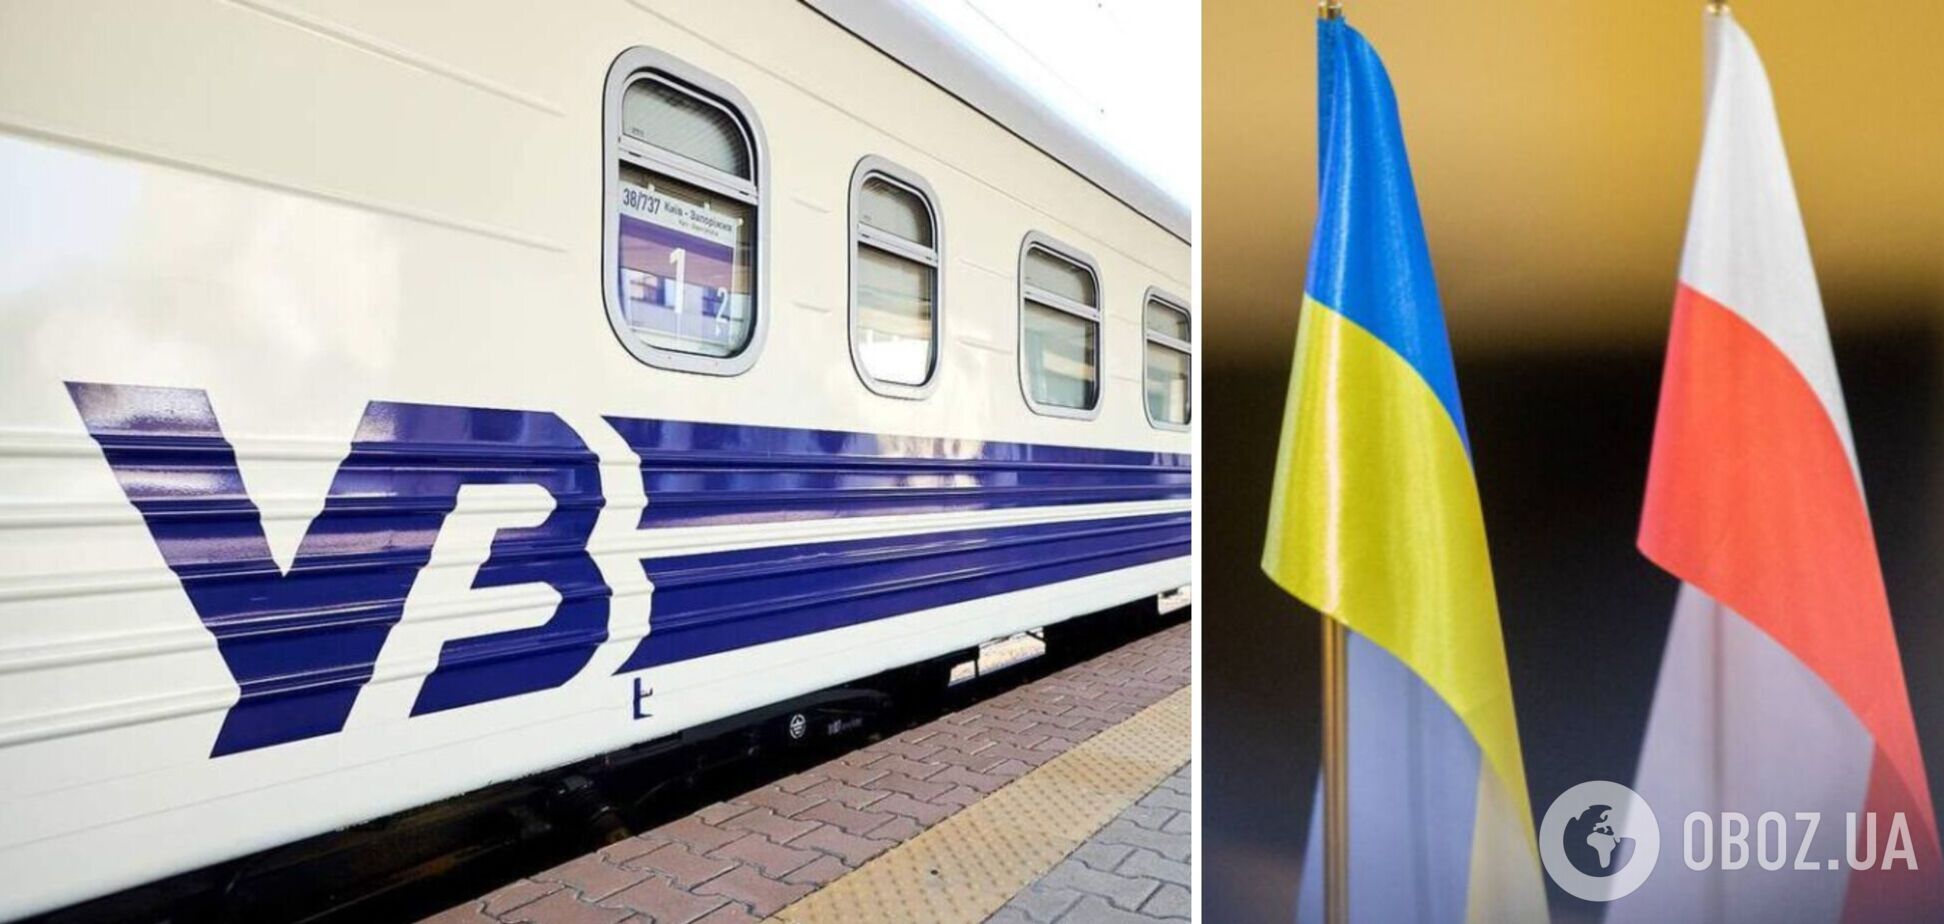 'Укрзалізниця' резко повысила стоимость билетов на сверхпопулярный рейс из Киева